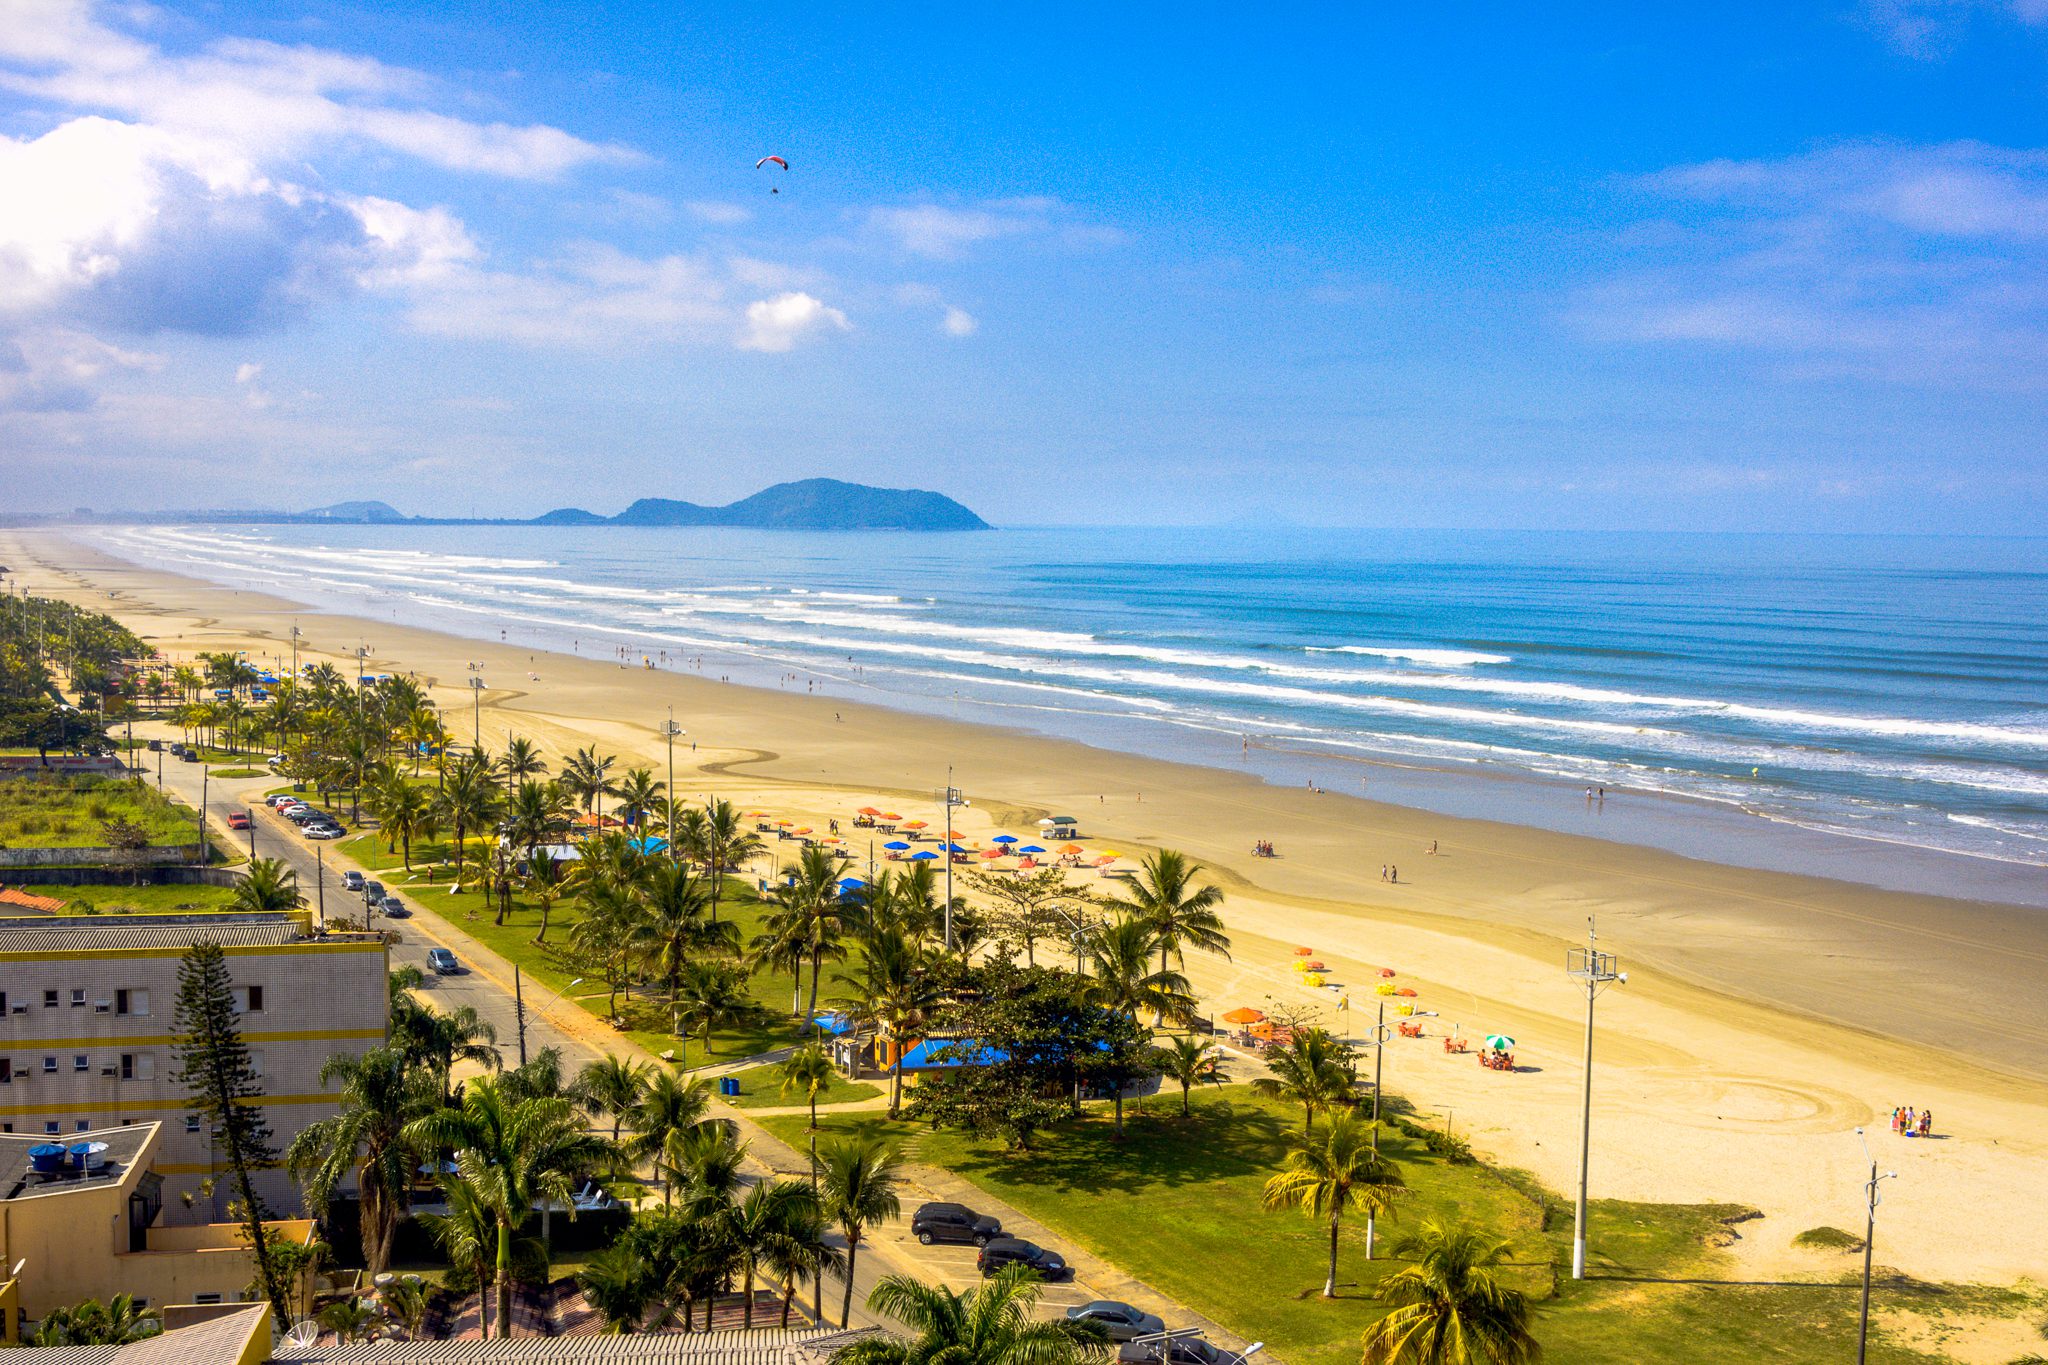 Rio da Praia concentra obras de saúde, esporte e urbanização